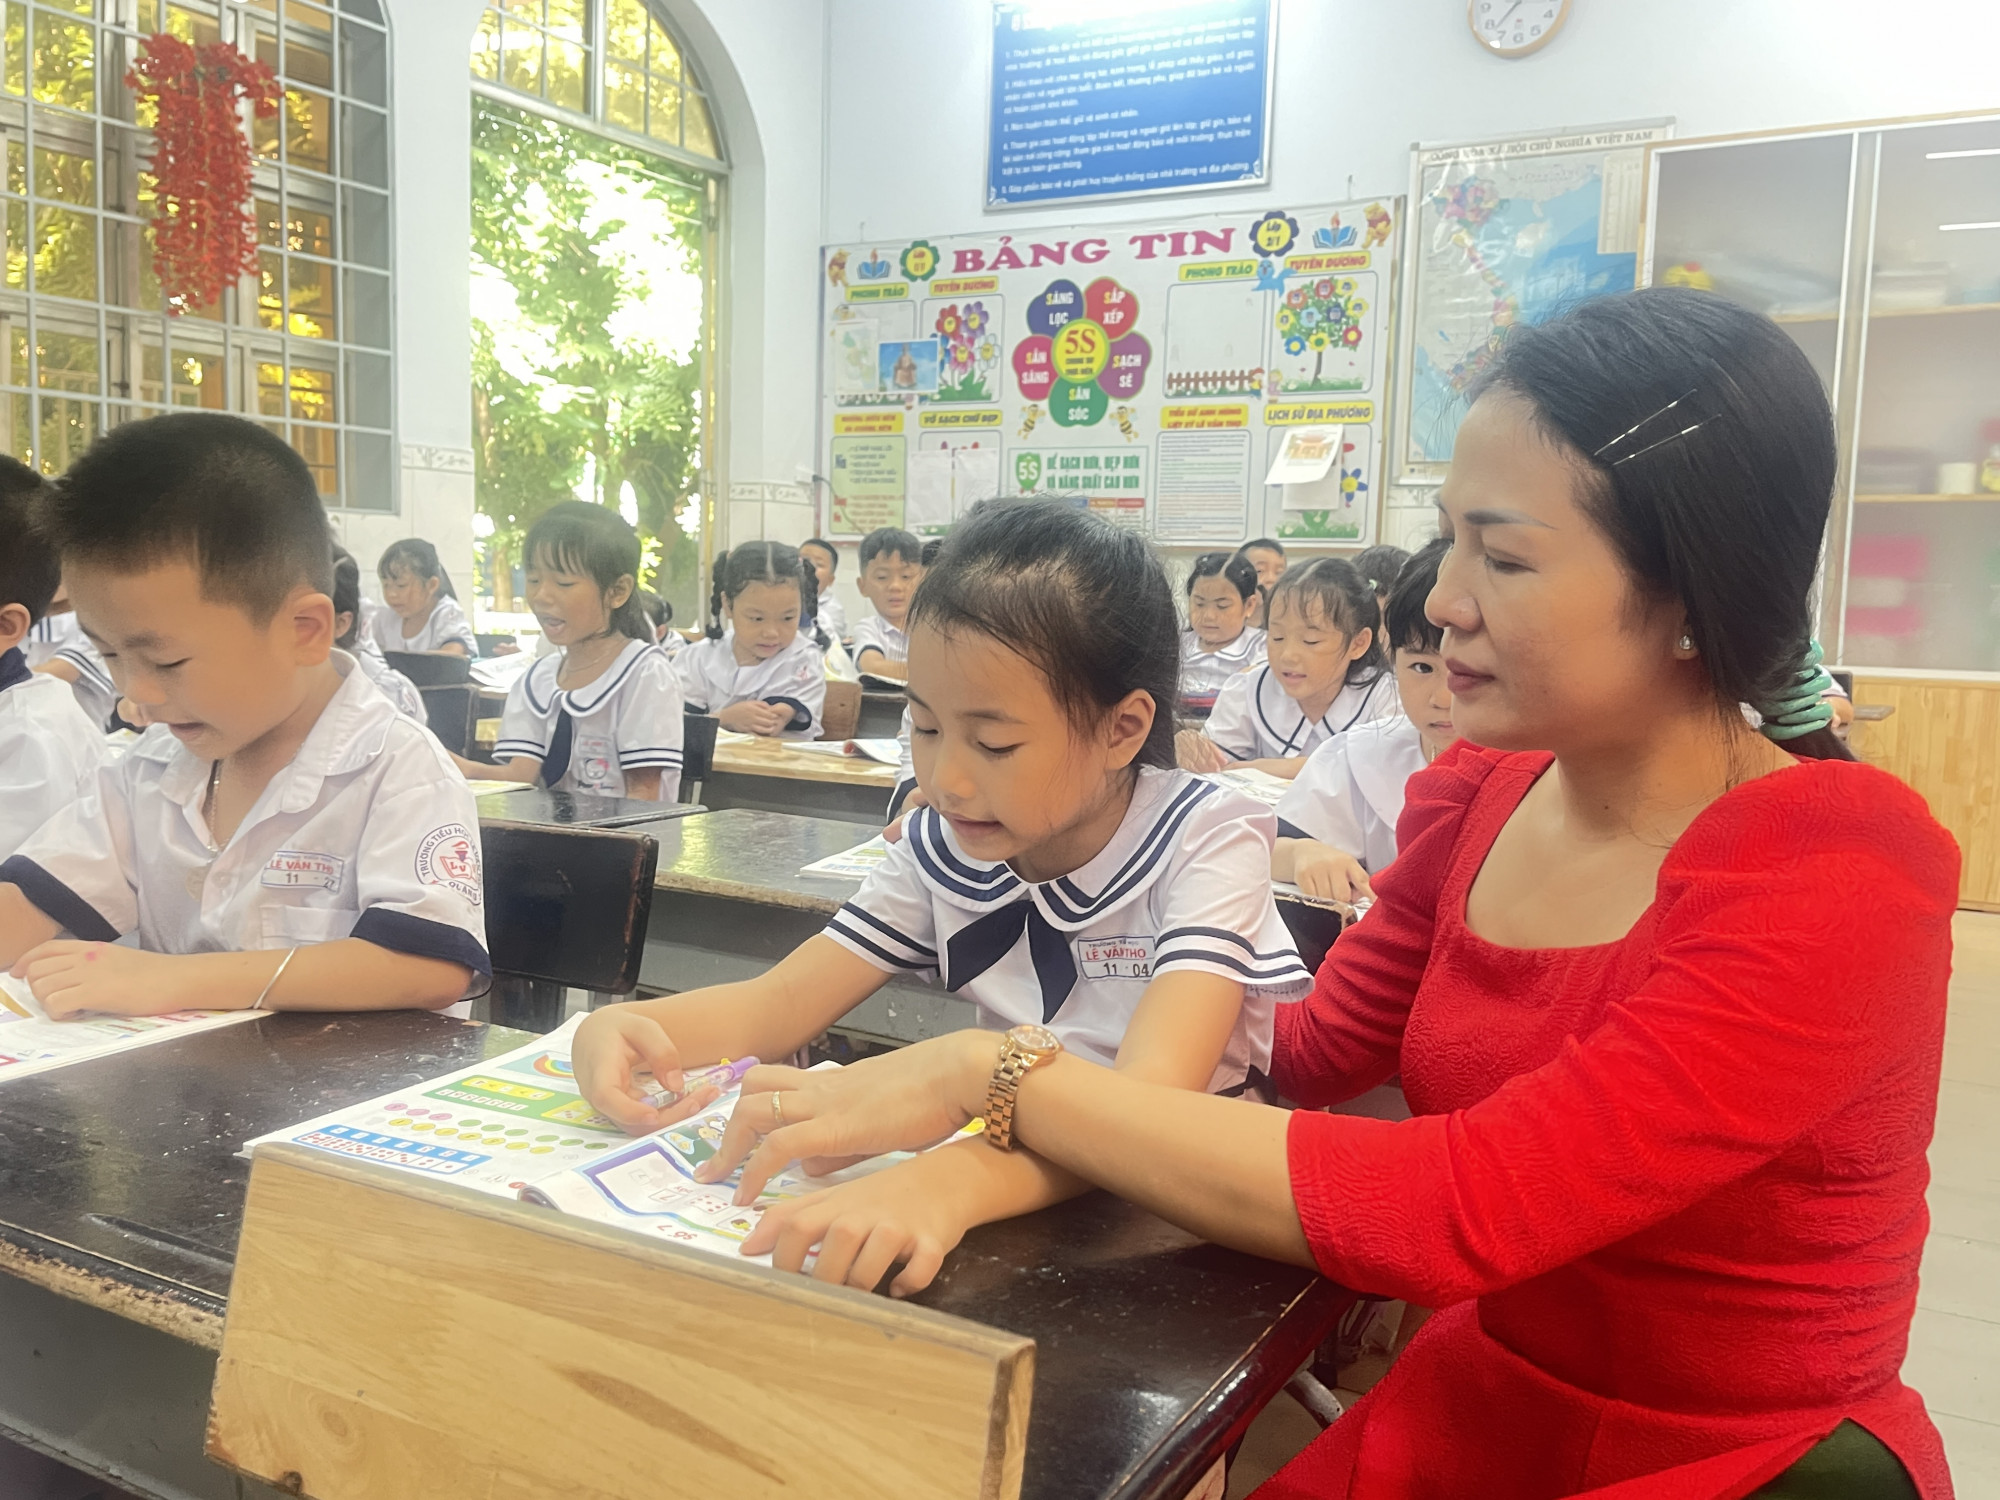 Bộ Giáo dục - Đào tạo, lương và phụ cấp ưu đãi nghề của nhà giáo chưa tương xứng với hoạt động nghề nghiệp - Ảnh: Nguyễn Loan